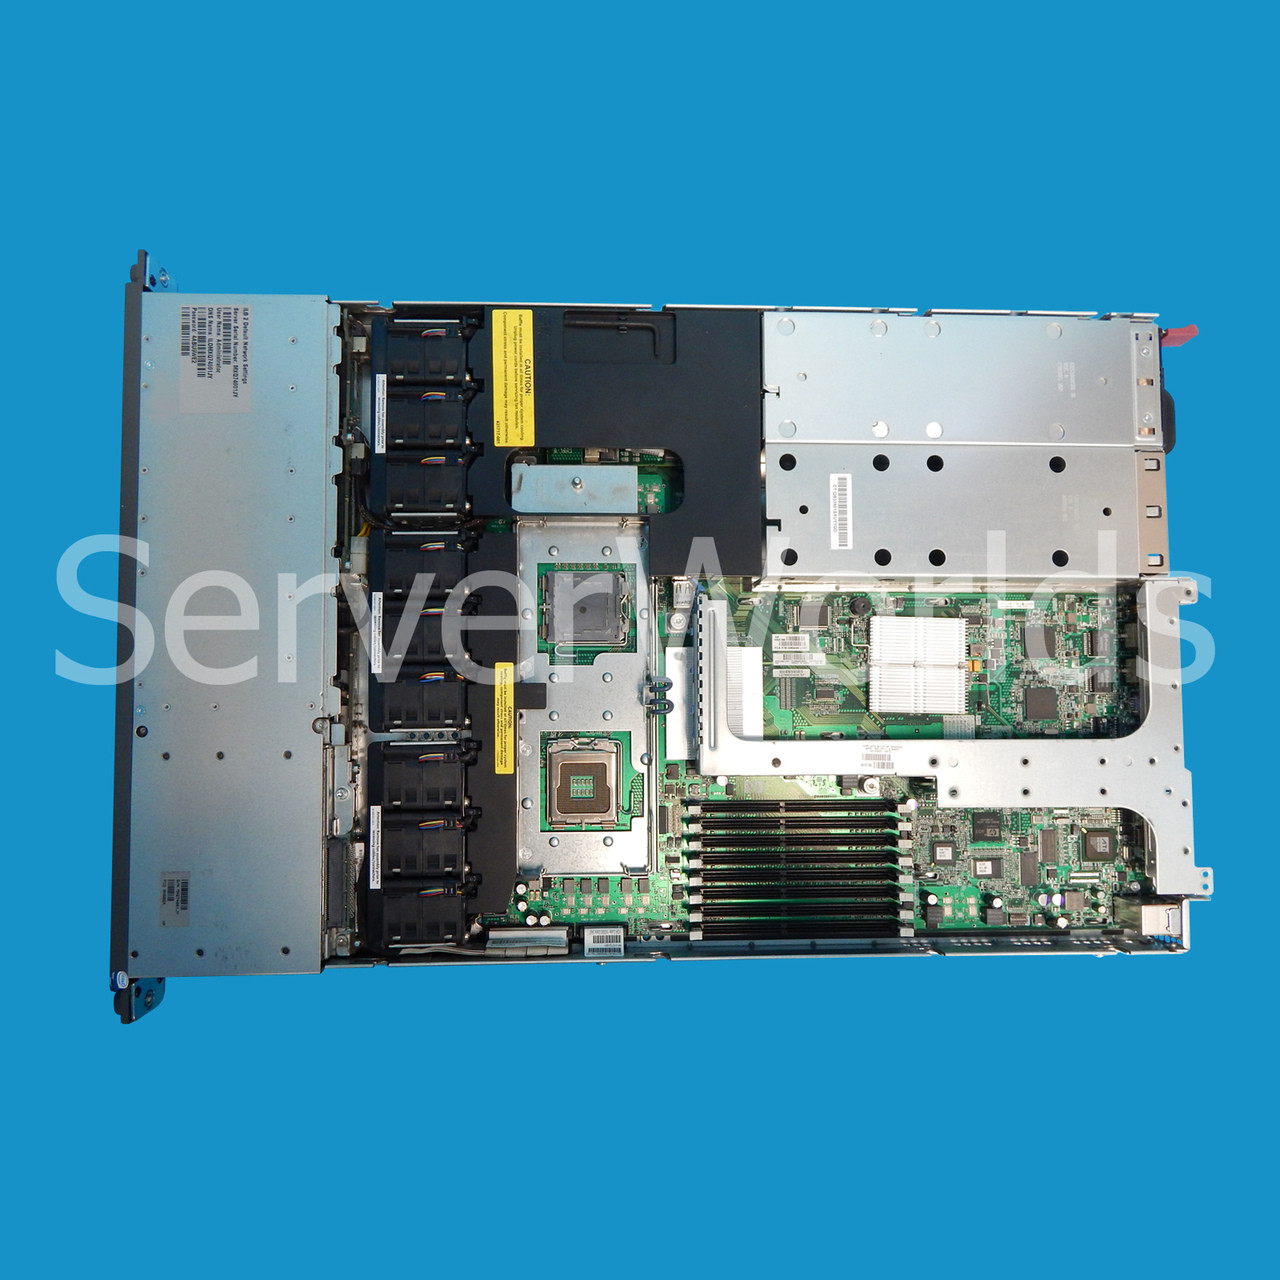 Refurbished HP DL360 G5, 2 x 5150 2.66Ghz, 2GB 416564-001